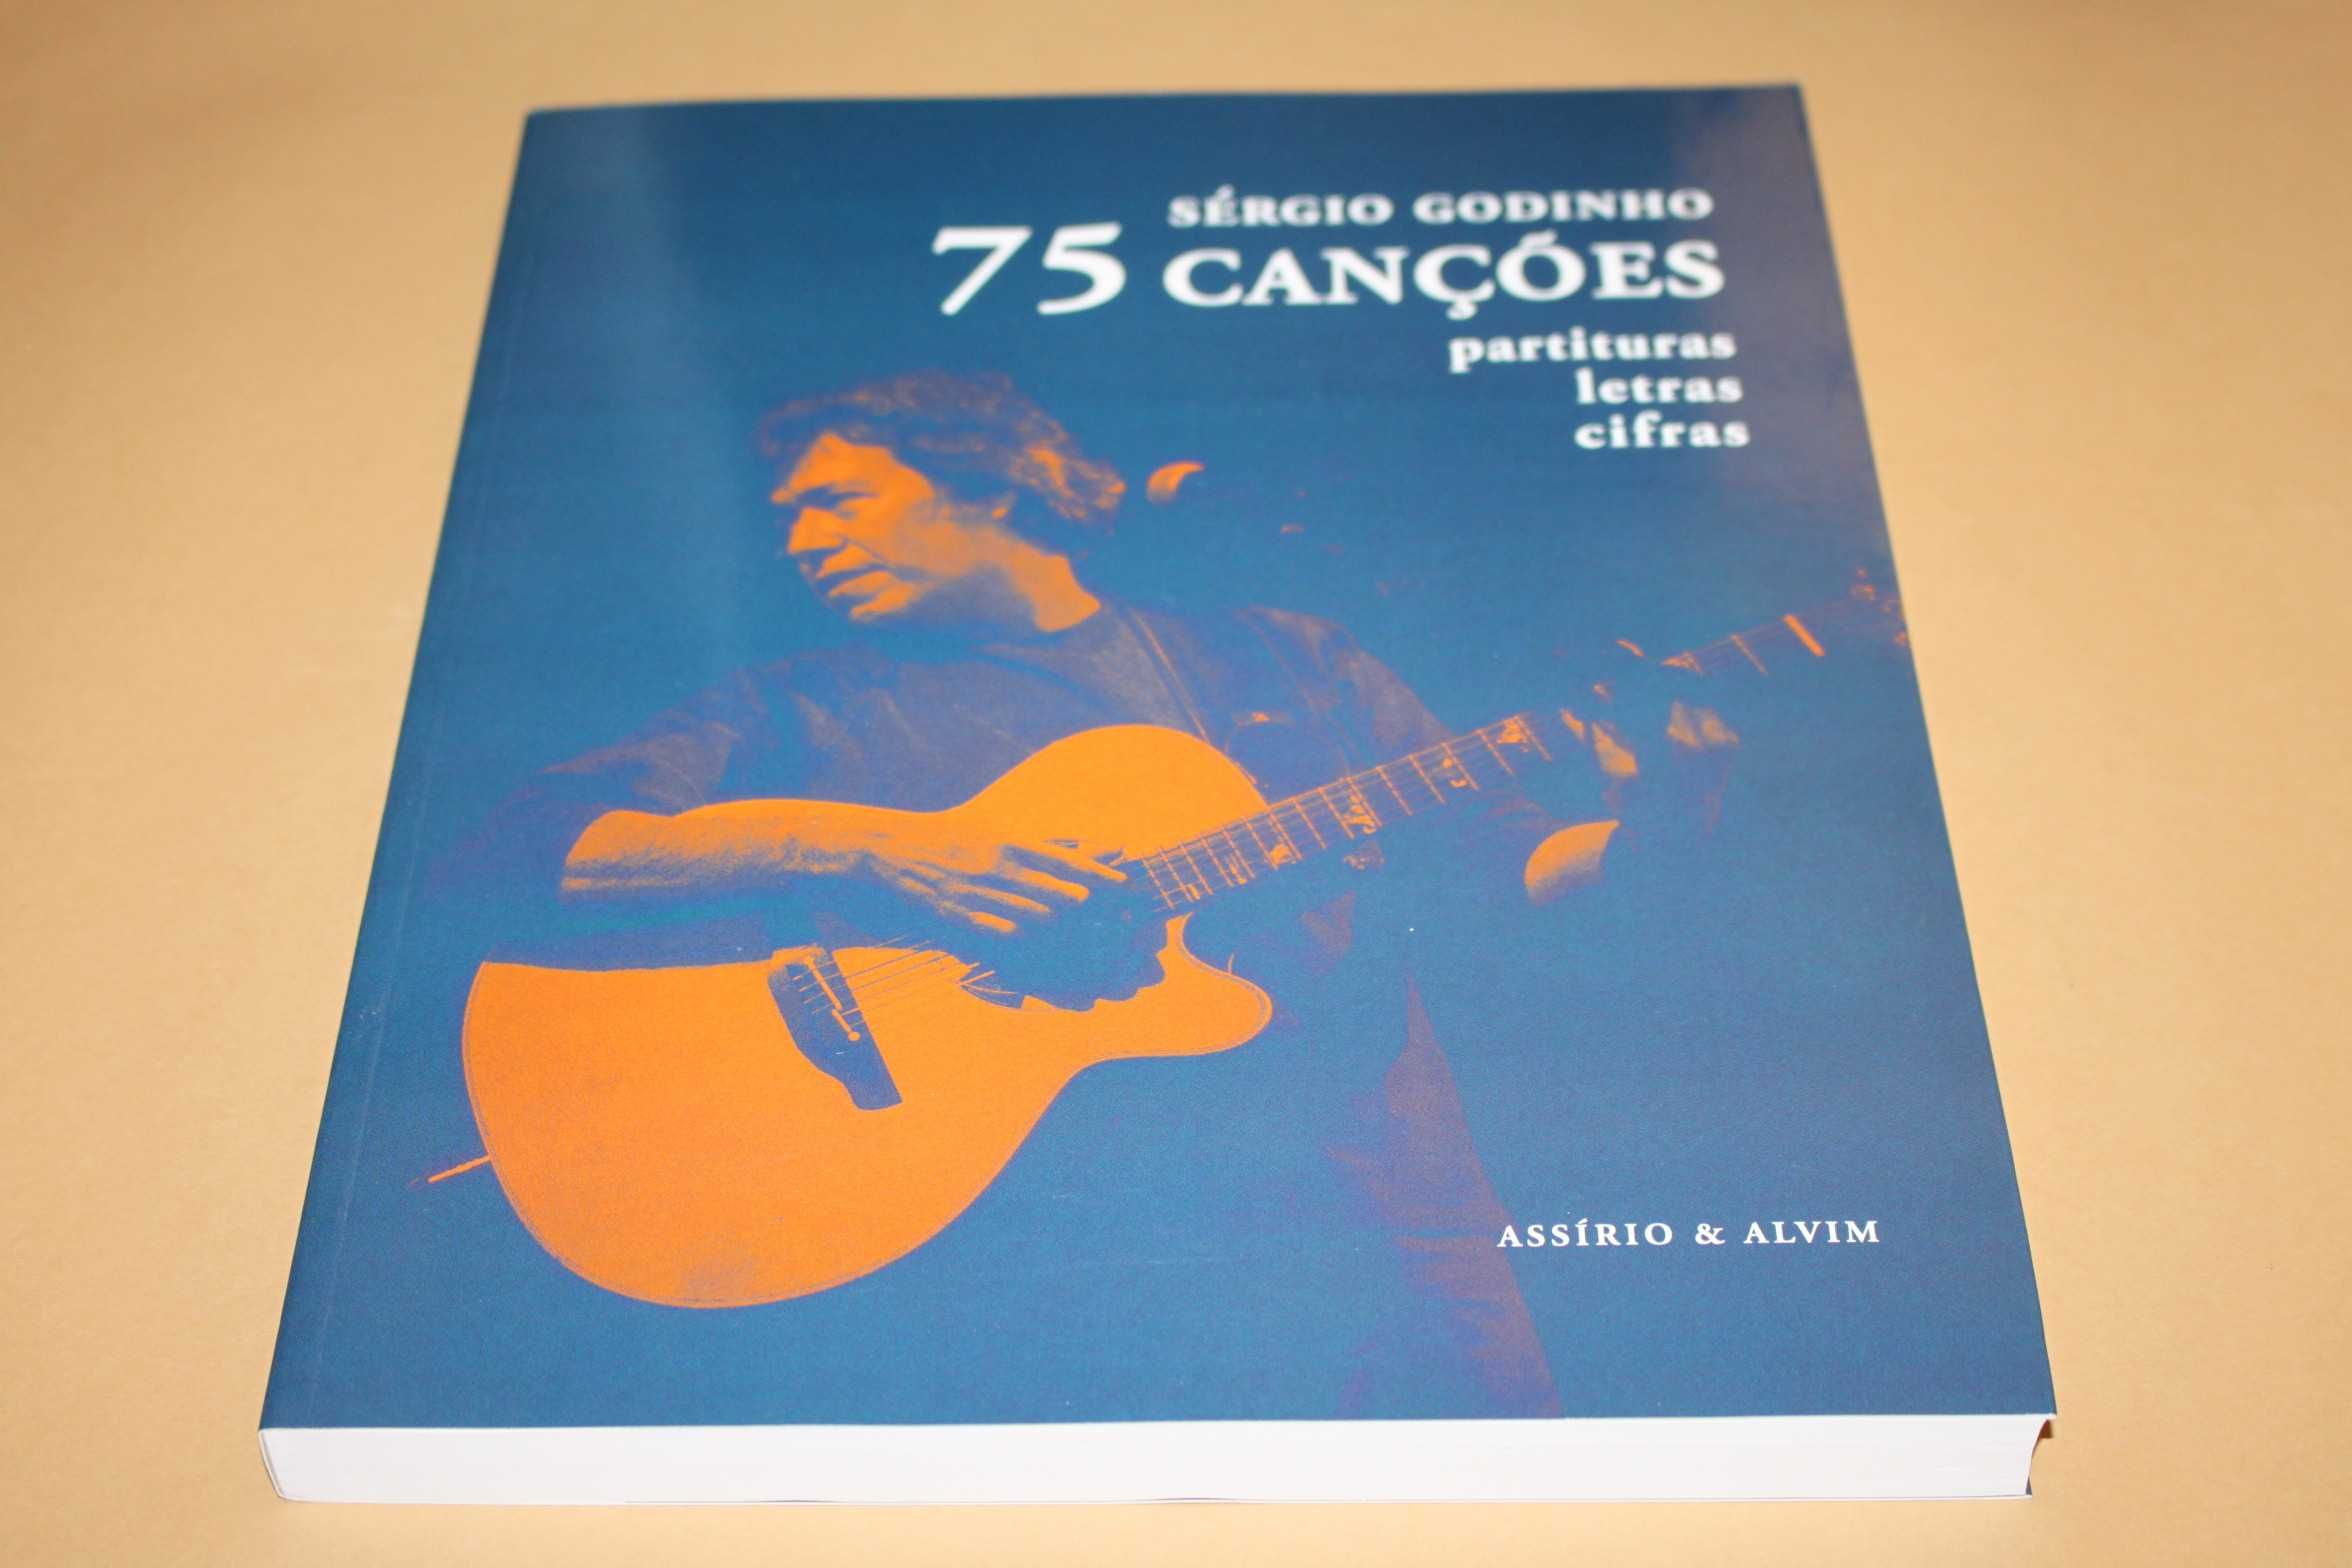 75 Canções Partituras, Letras, Cifras //Sérgio Godinho